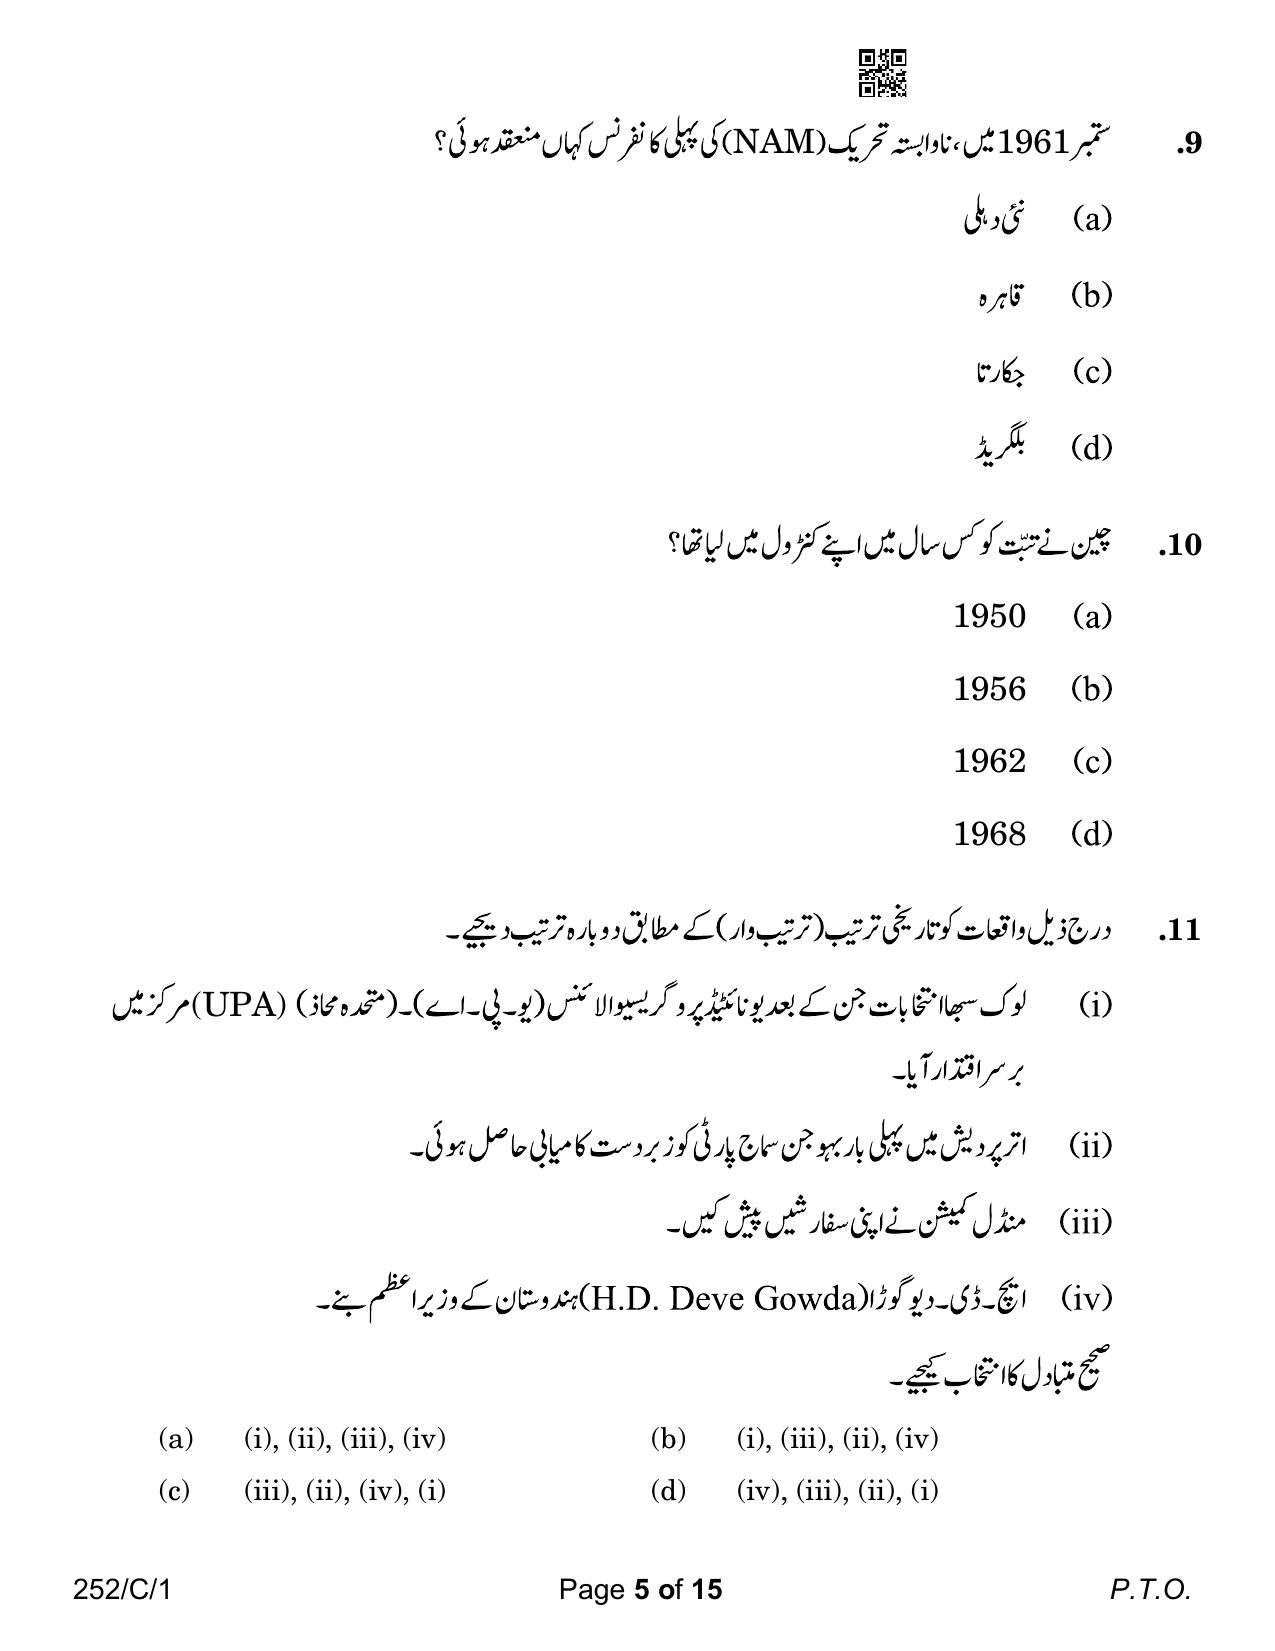 CBSE Class 12 252-1 Political Science Urdu Version 2023 (Compartment) Question Paper - Page 5